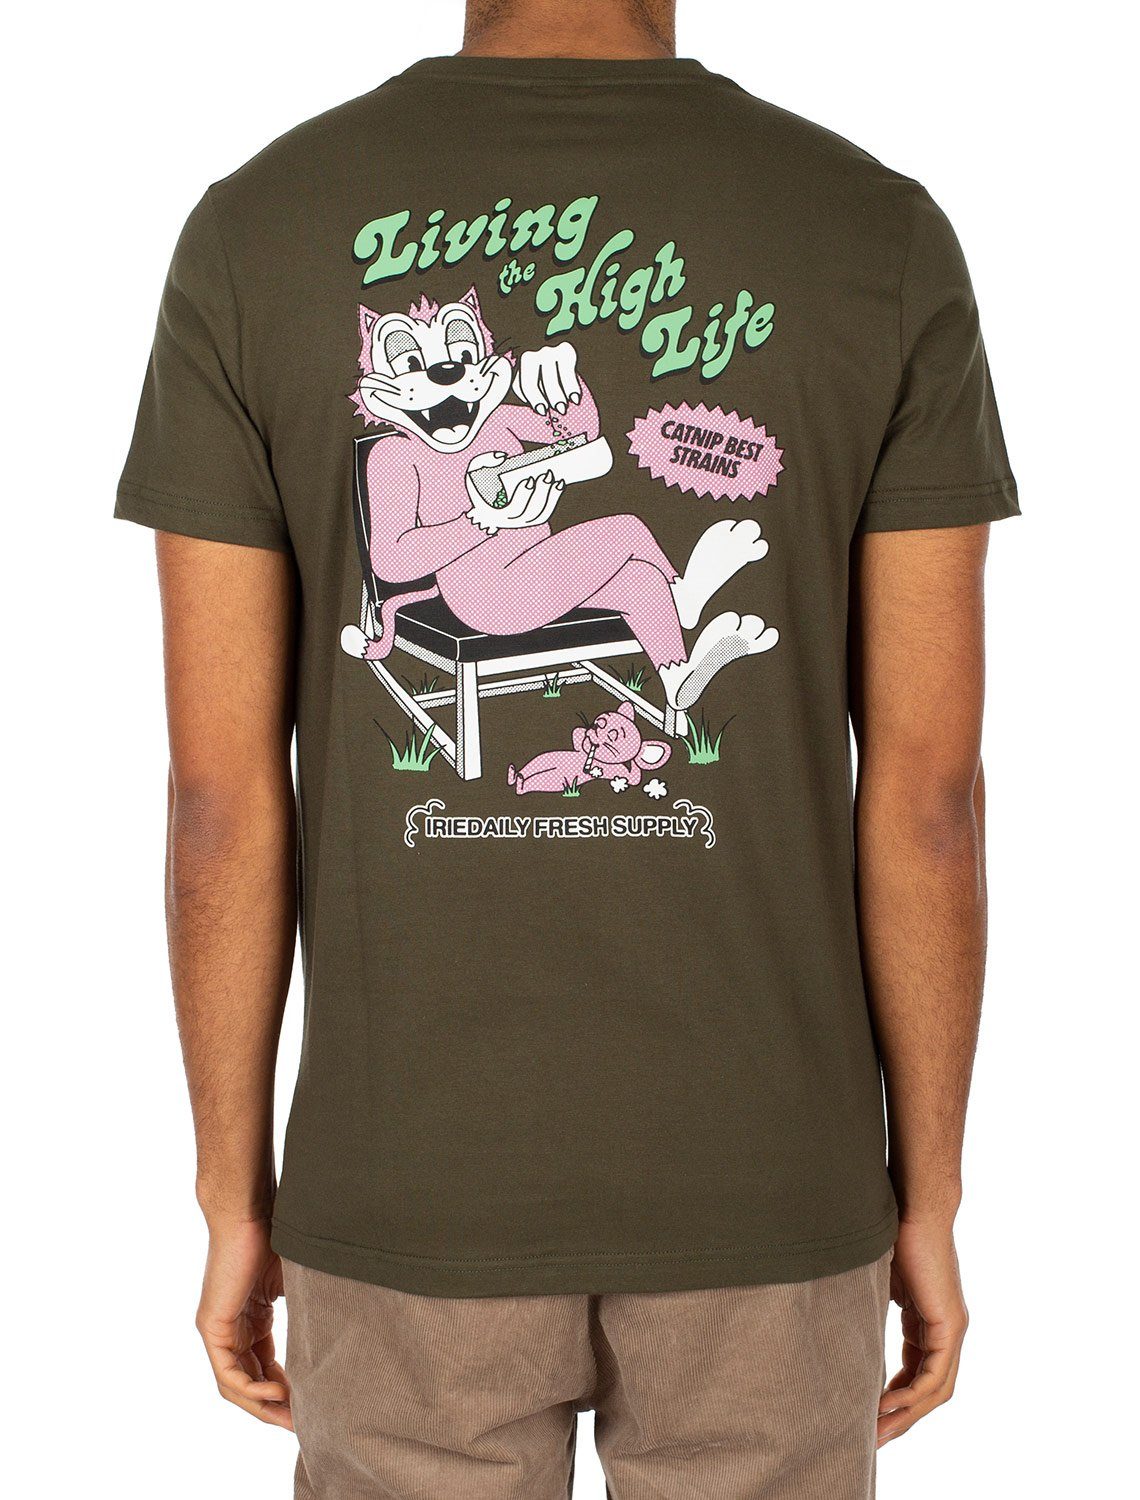 Fresh iriedaily T-Shirt Supply T-Shirt Iriedaily